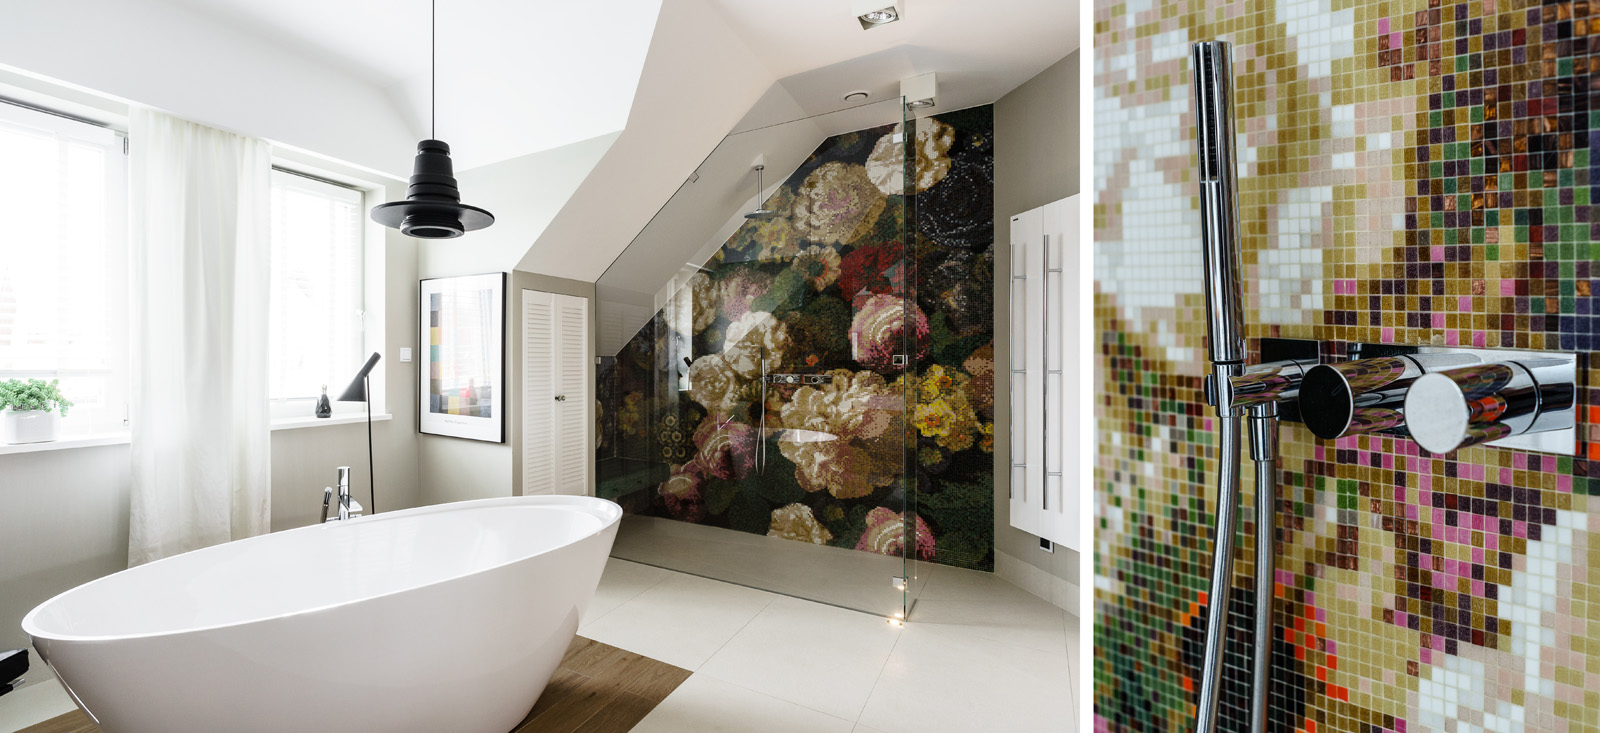 Mozaika Bisazza w salonie kąpielowym